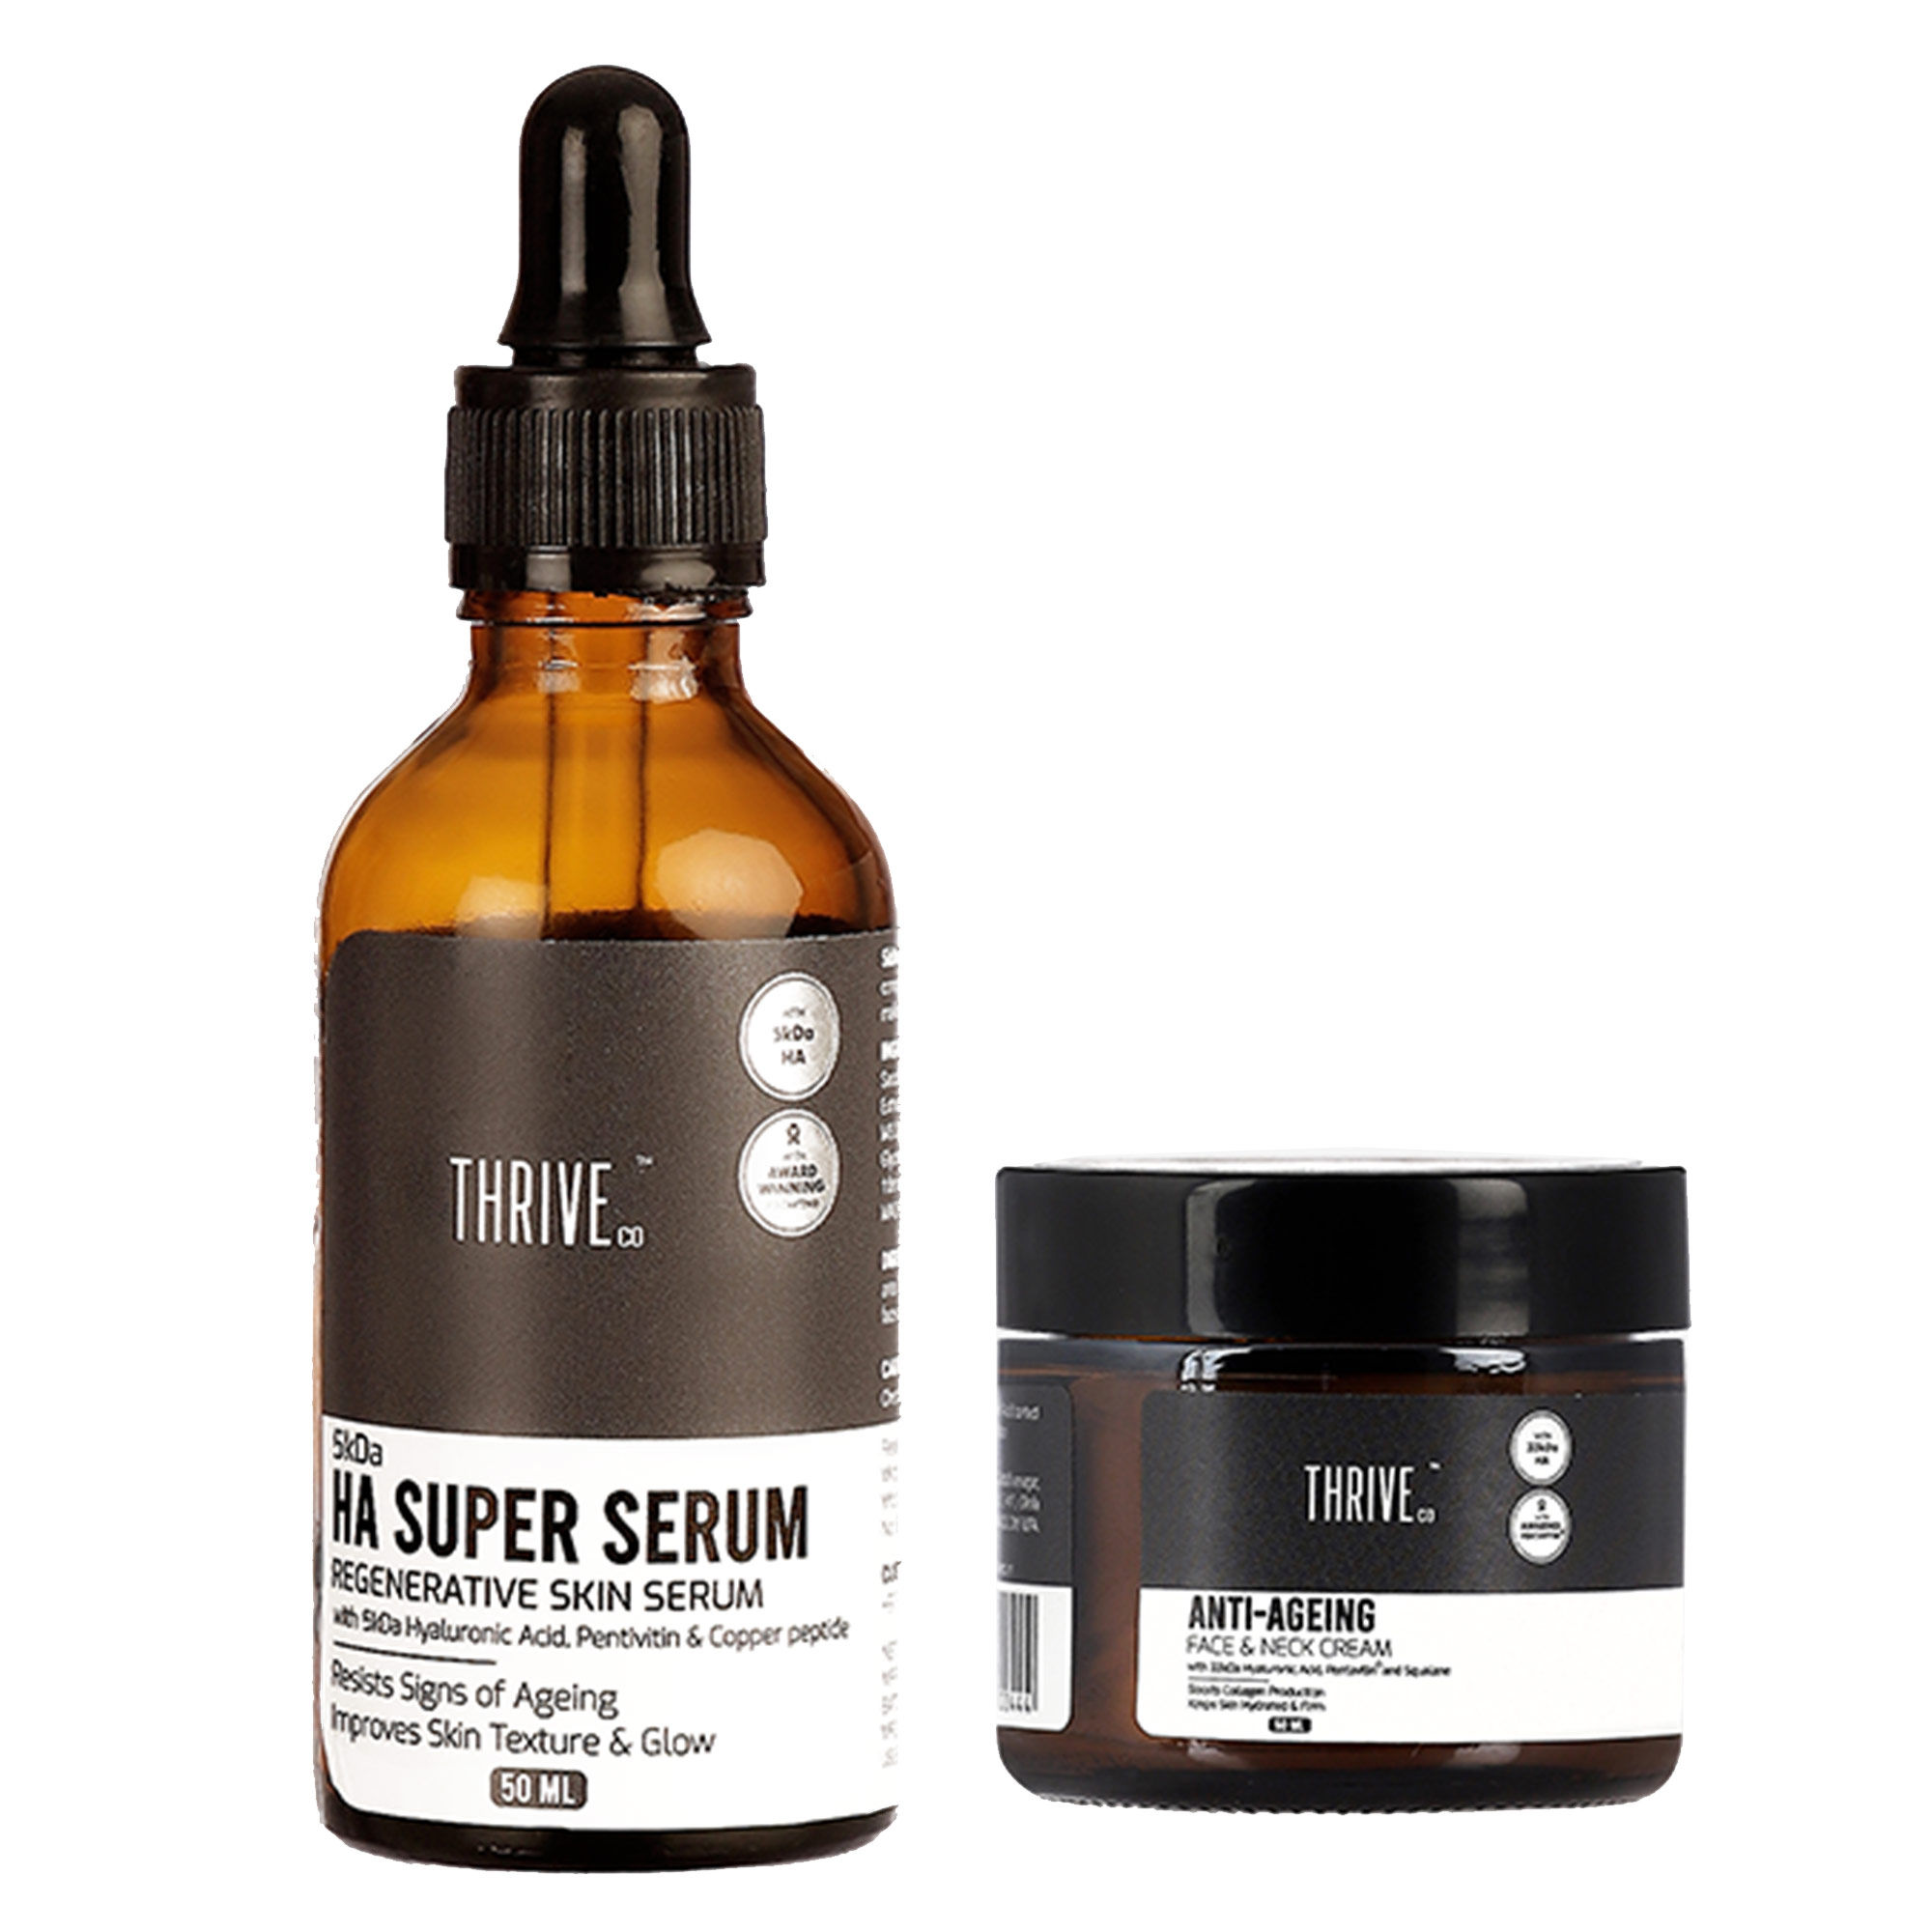 ThriveCo Perfect Anti-ageing Skincare Regimen: 5kda Hyaluronic Acid Super Serum + Anti-ageing Cream